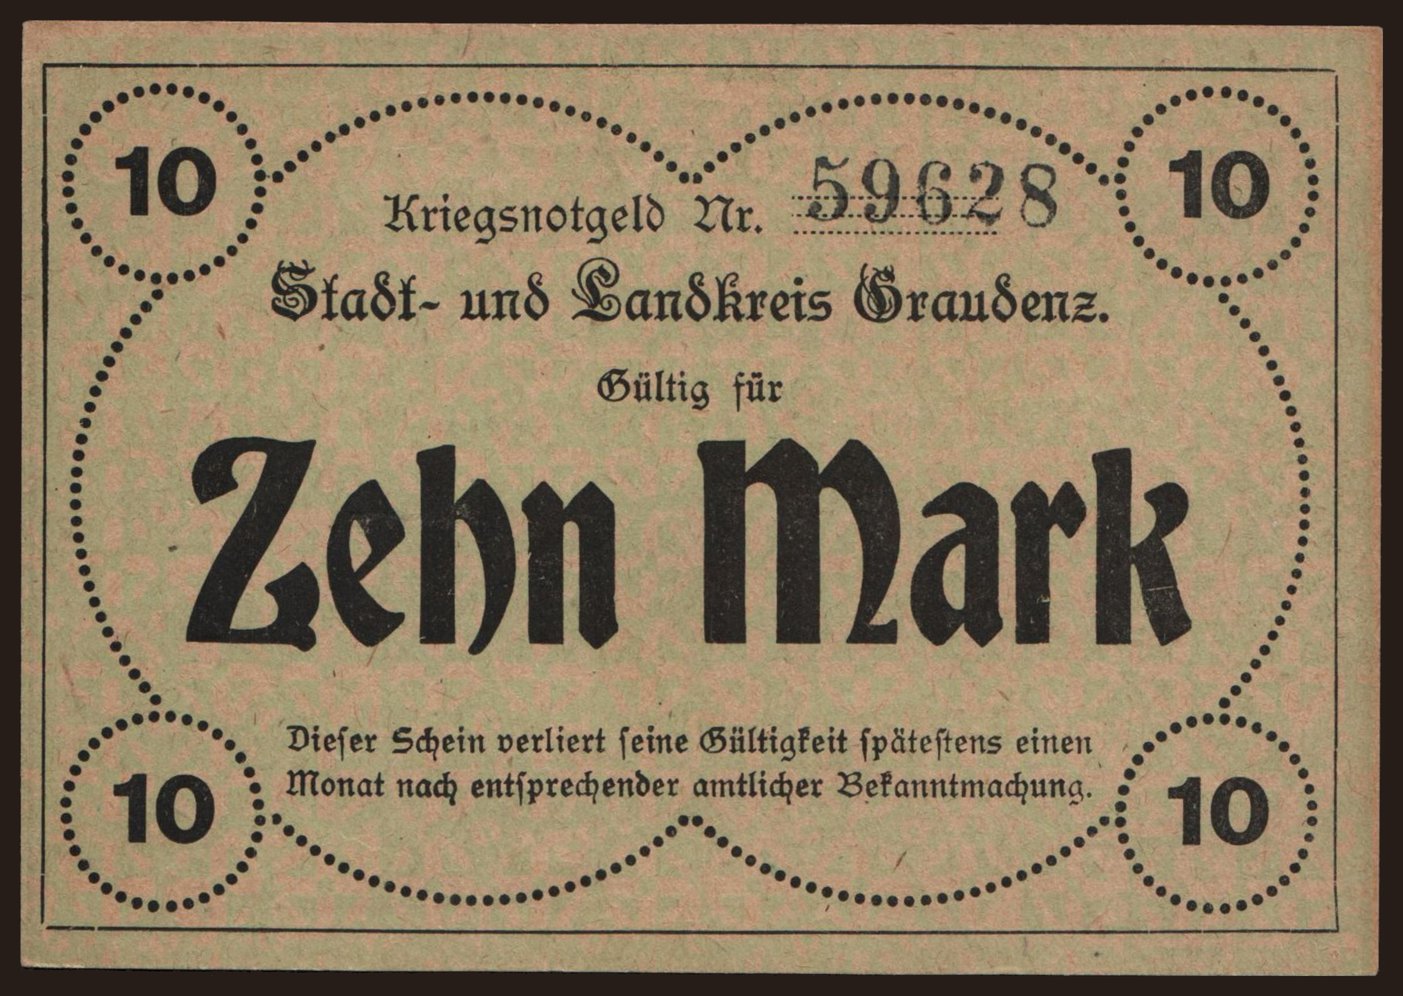 Graudenz/ Stadt und Landkreis, 10 Mark, 1918